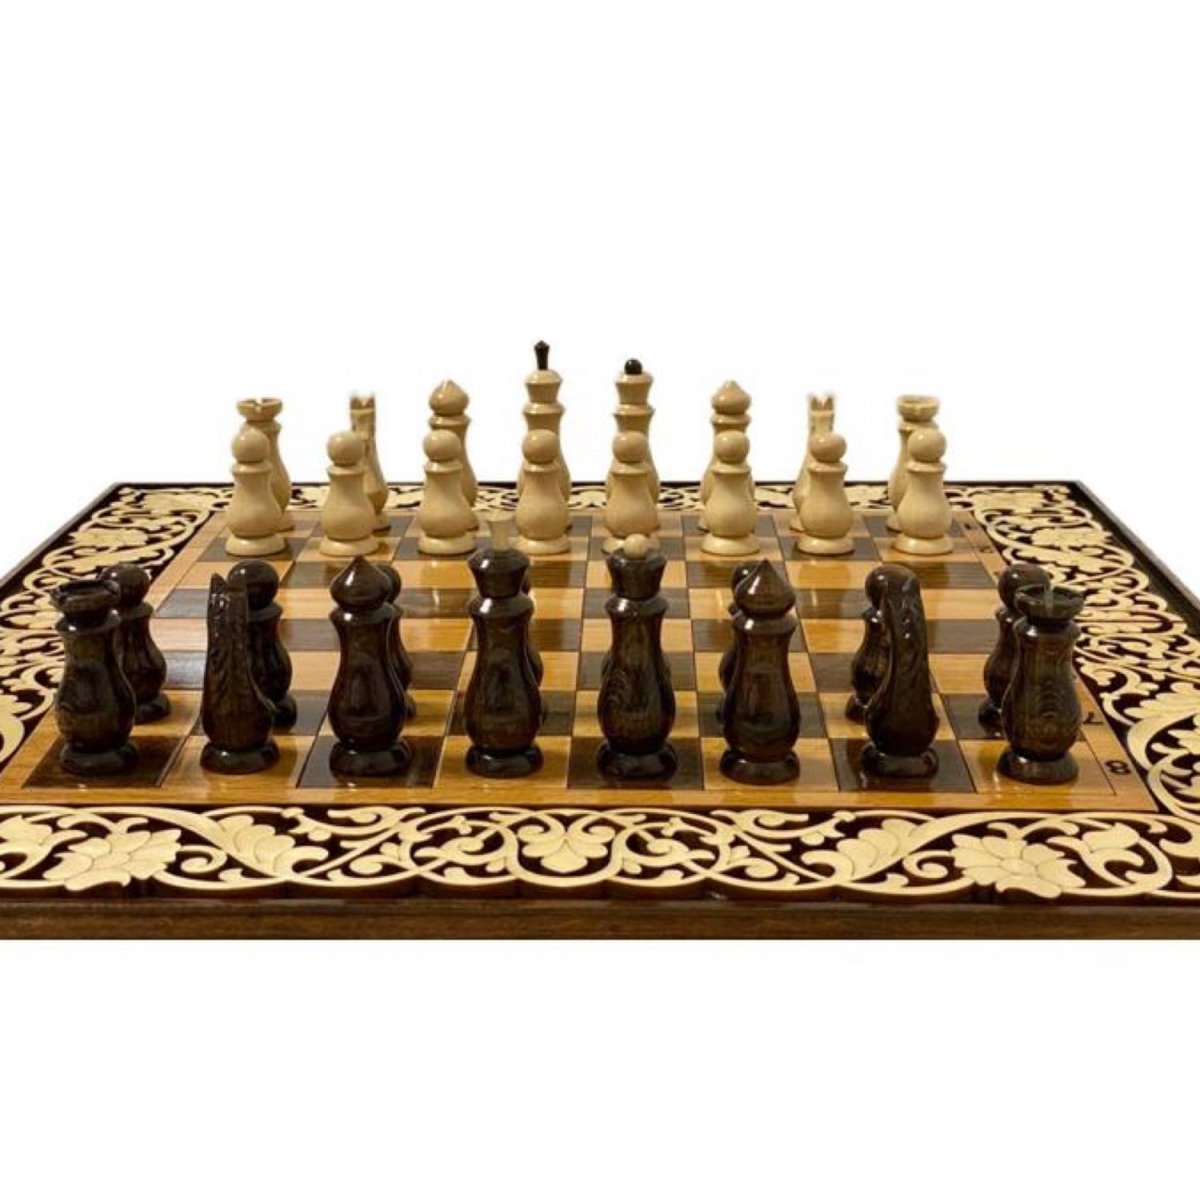 Белый Король шахматы